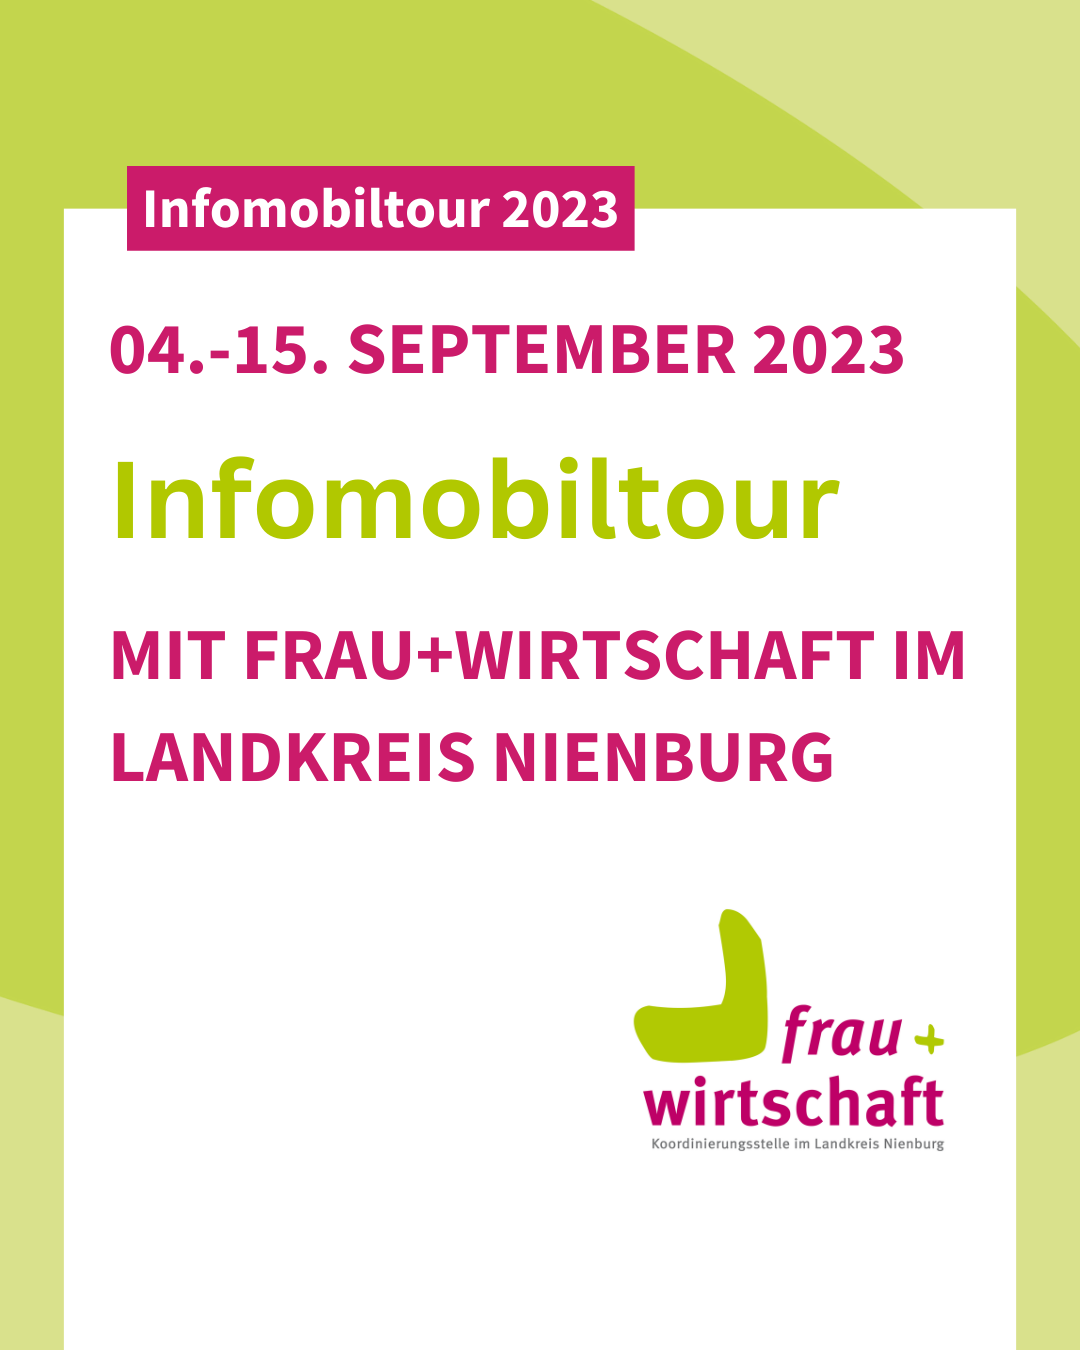 Infomobiltour 2023 mit frau+wirtschaft im Landkreis Nienburg